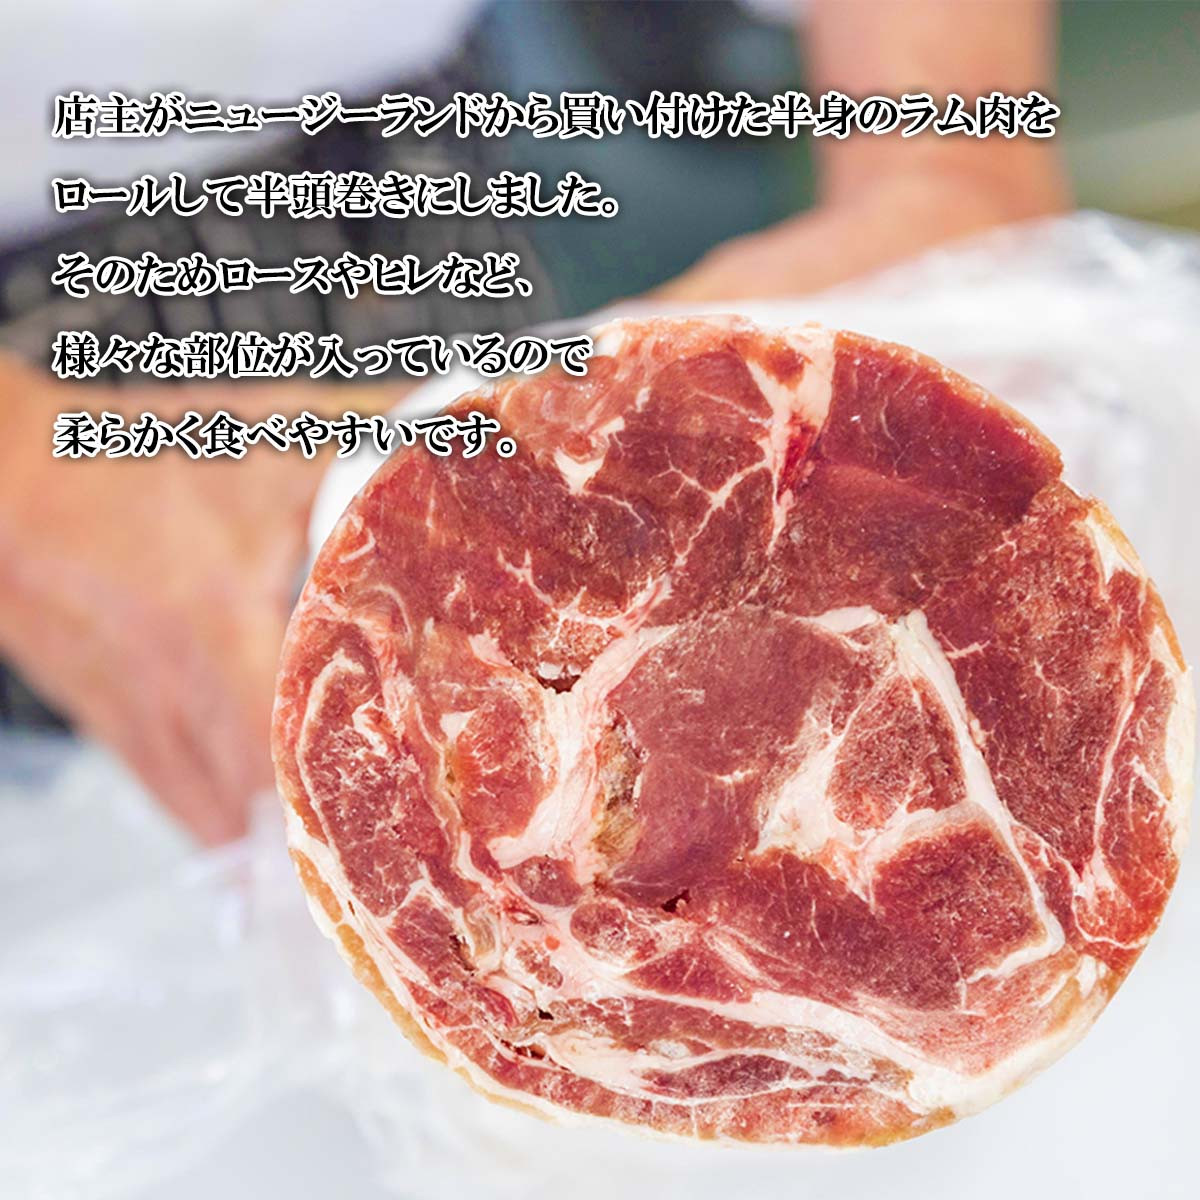 北海道 ラム肉 しゃぶしゃぶ 用 500g ラム ラムしゃぶ 半頭巻き スライス ジンギスカン 焼肉 羊肉